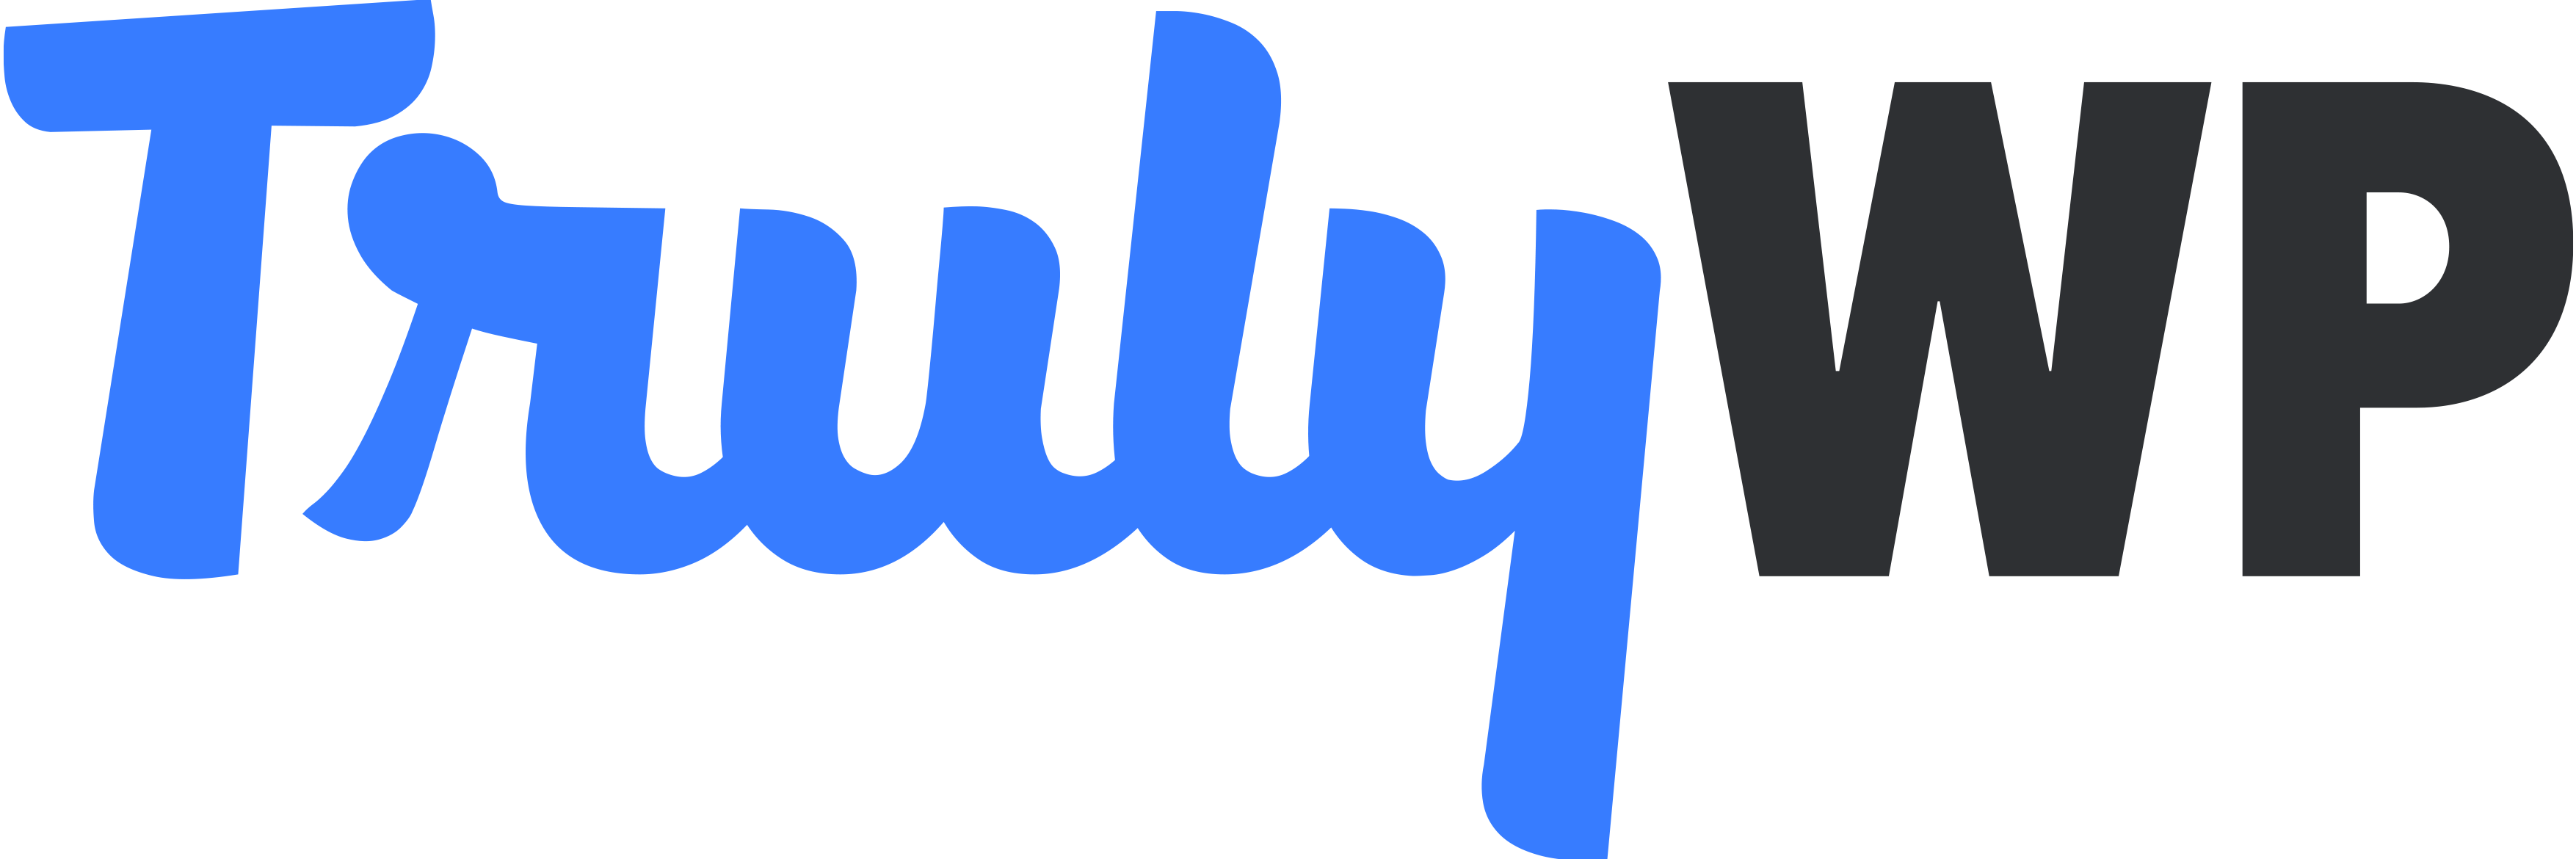 TrulyWP logo